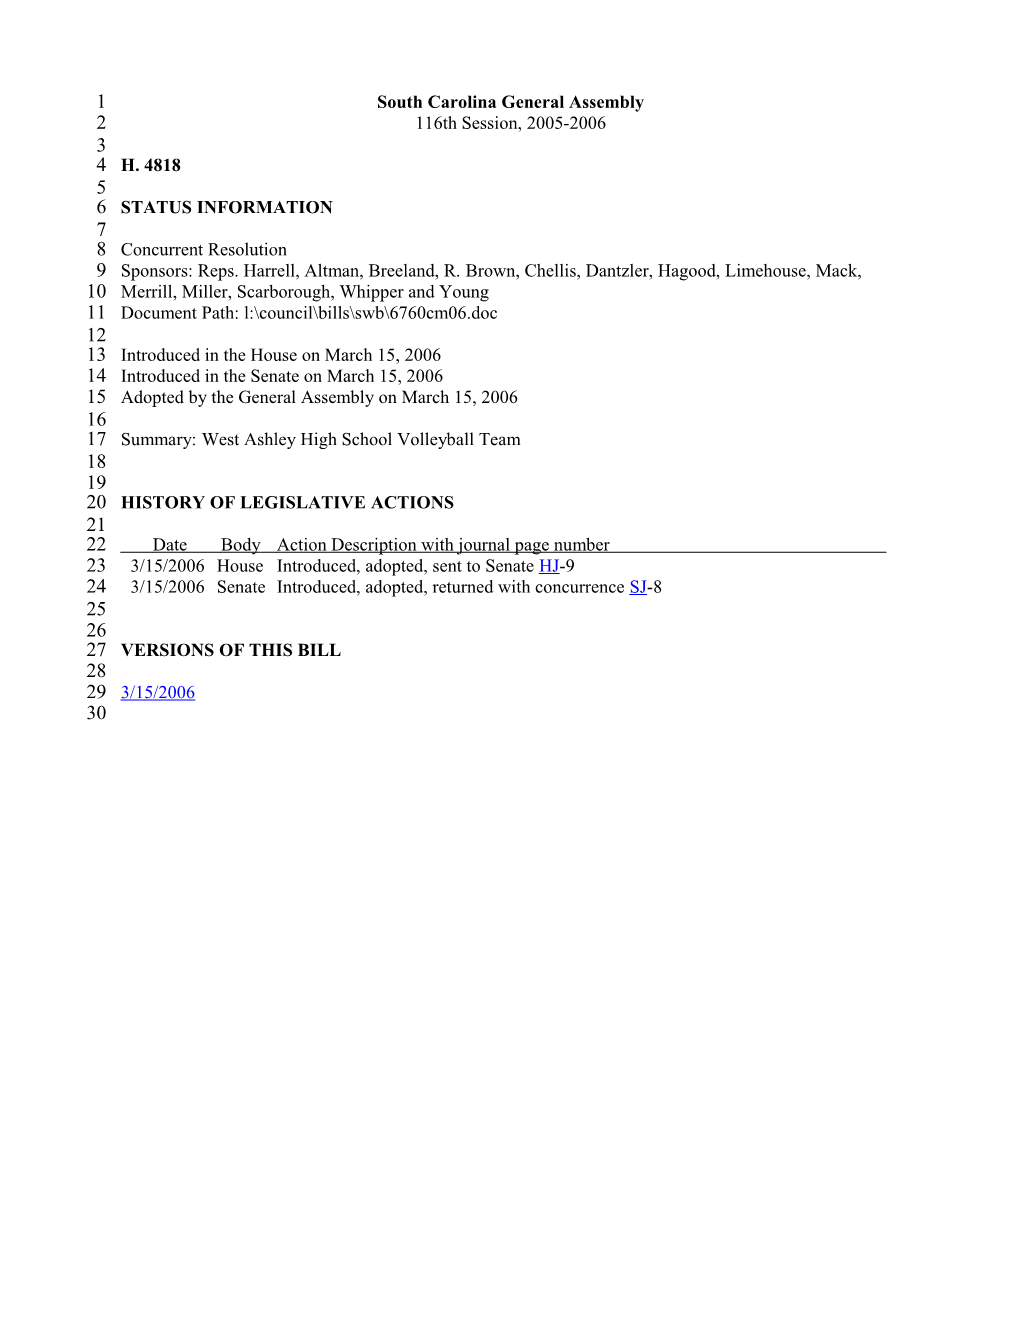 2005-2006 Bill 4818: West Ashley High School Volleyball Team - South Carolina Legislature Online